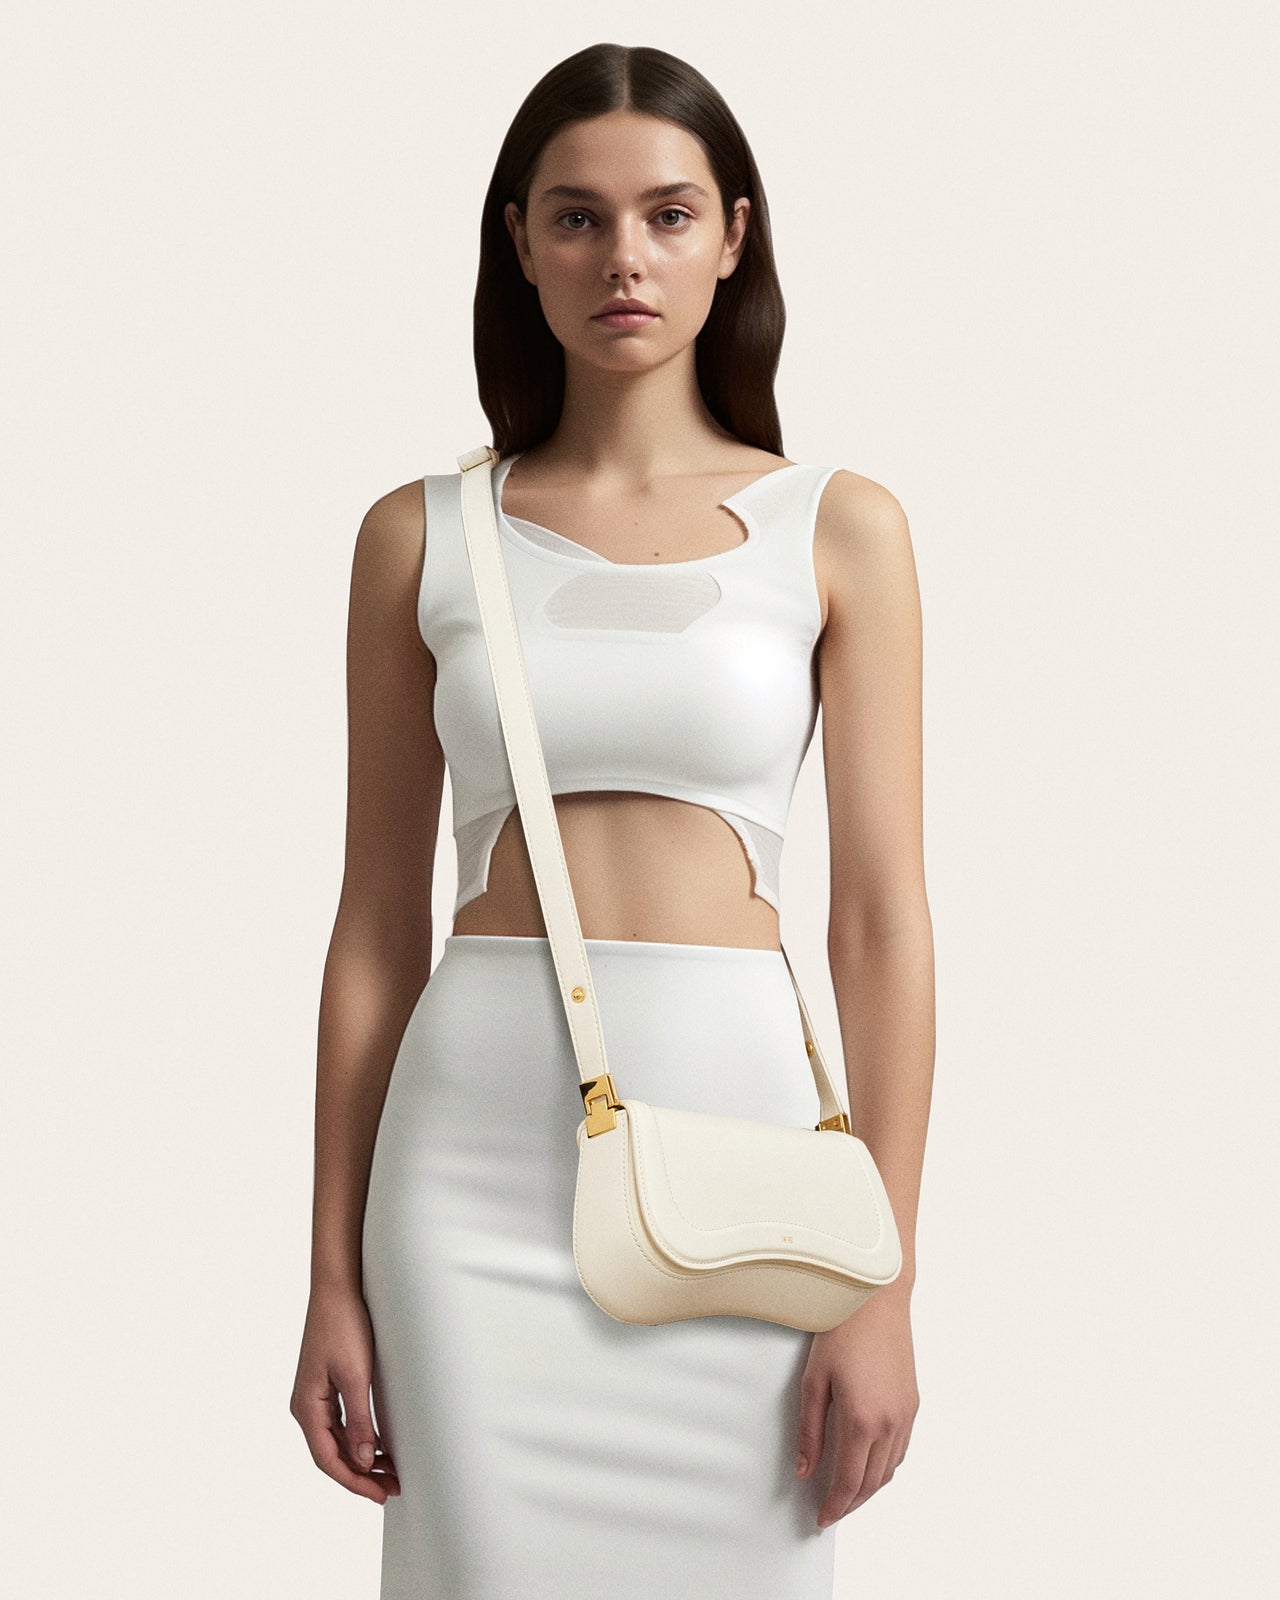 JW PEI - Eva Shoulder Handbag #jwpei #jwpeieva #fashion #blackfriday #